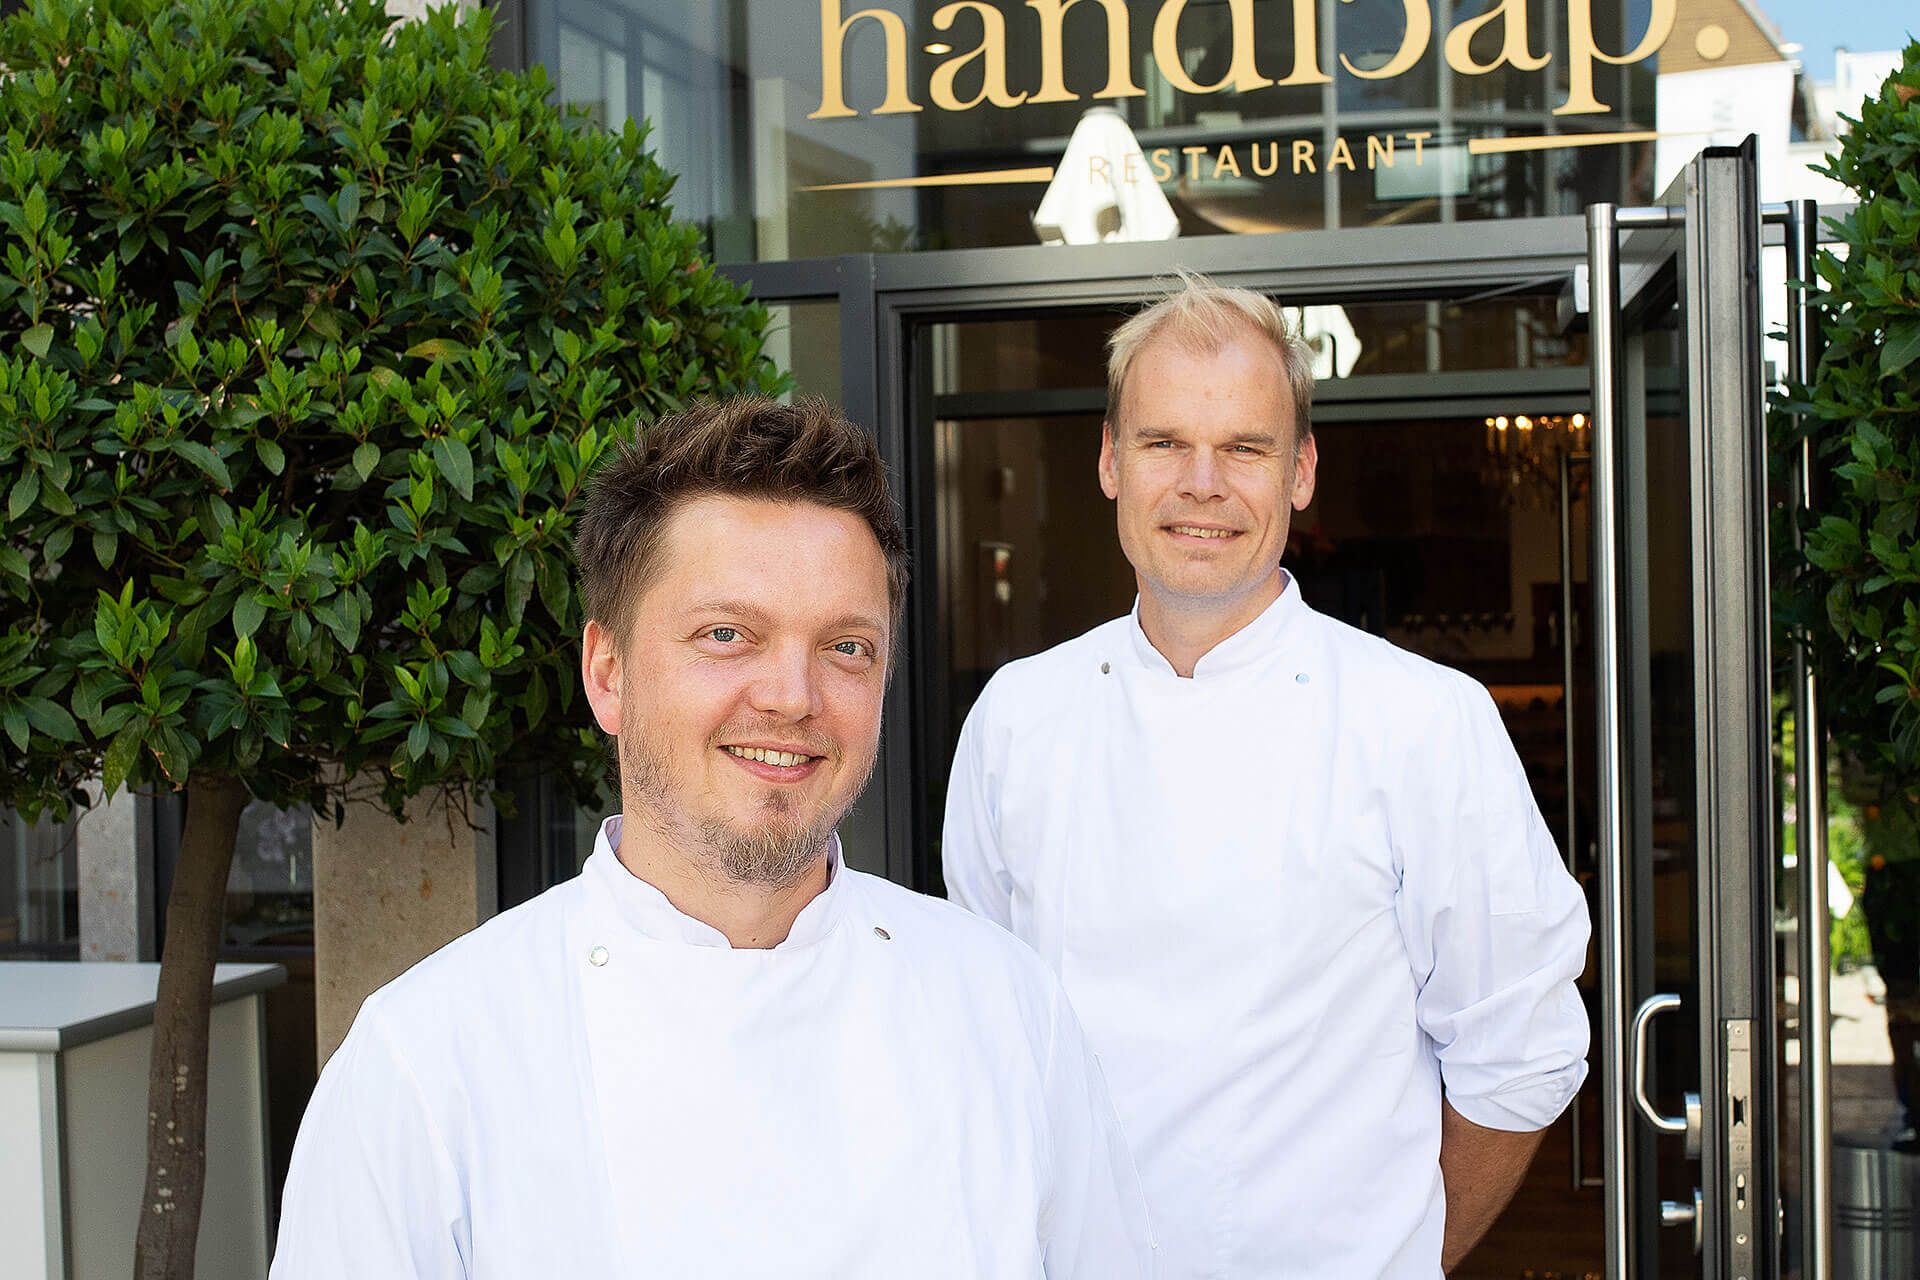 Doppelspitze: Seit Sommer 2020 führen Tobias Pfeiffer (links) und Sebastian Wiese gemeinsam das Restaurant handicap. in Künzelsau.